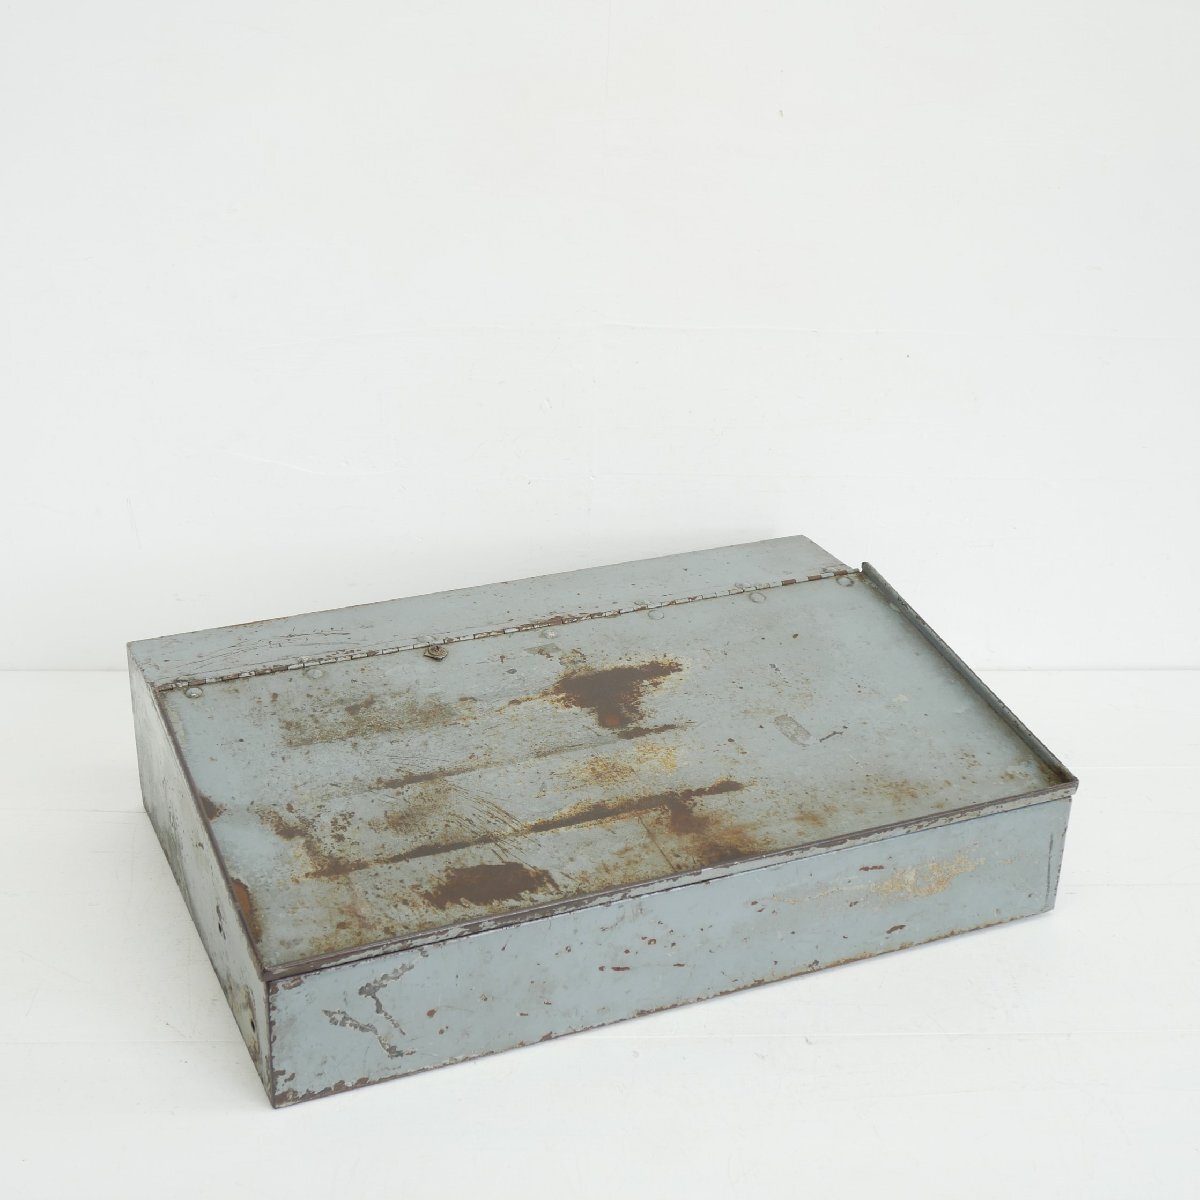 1970s TEXACO テキサコ ツールボックス / ヴィンテージ 工具箱 収納ケース #510-50-147-459_画像3